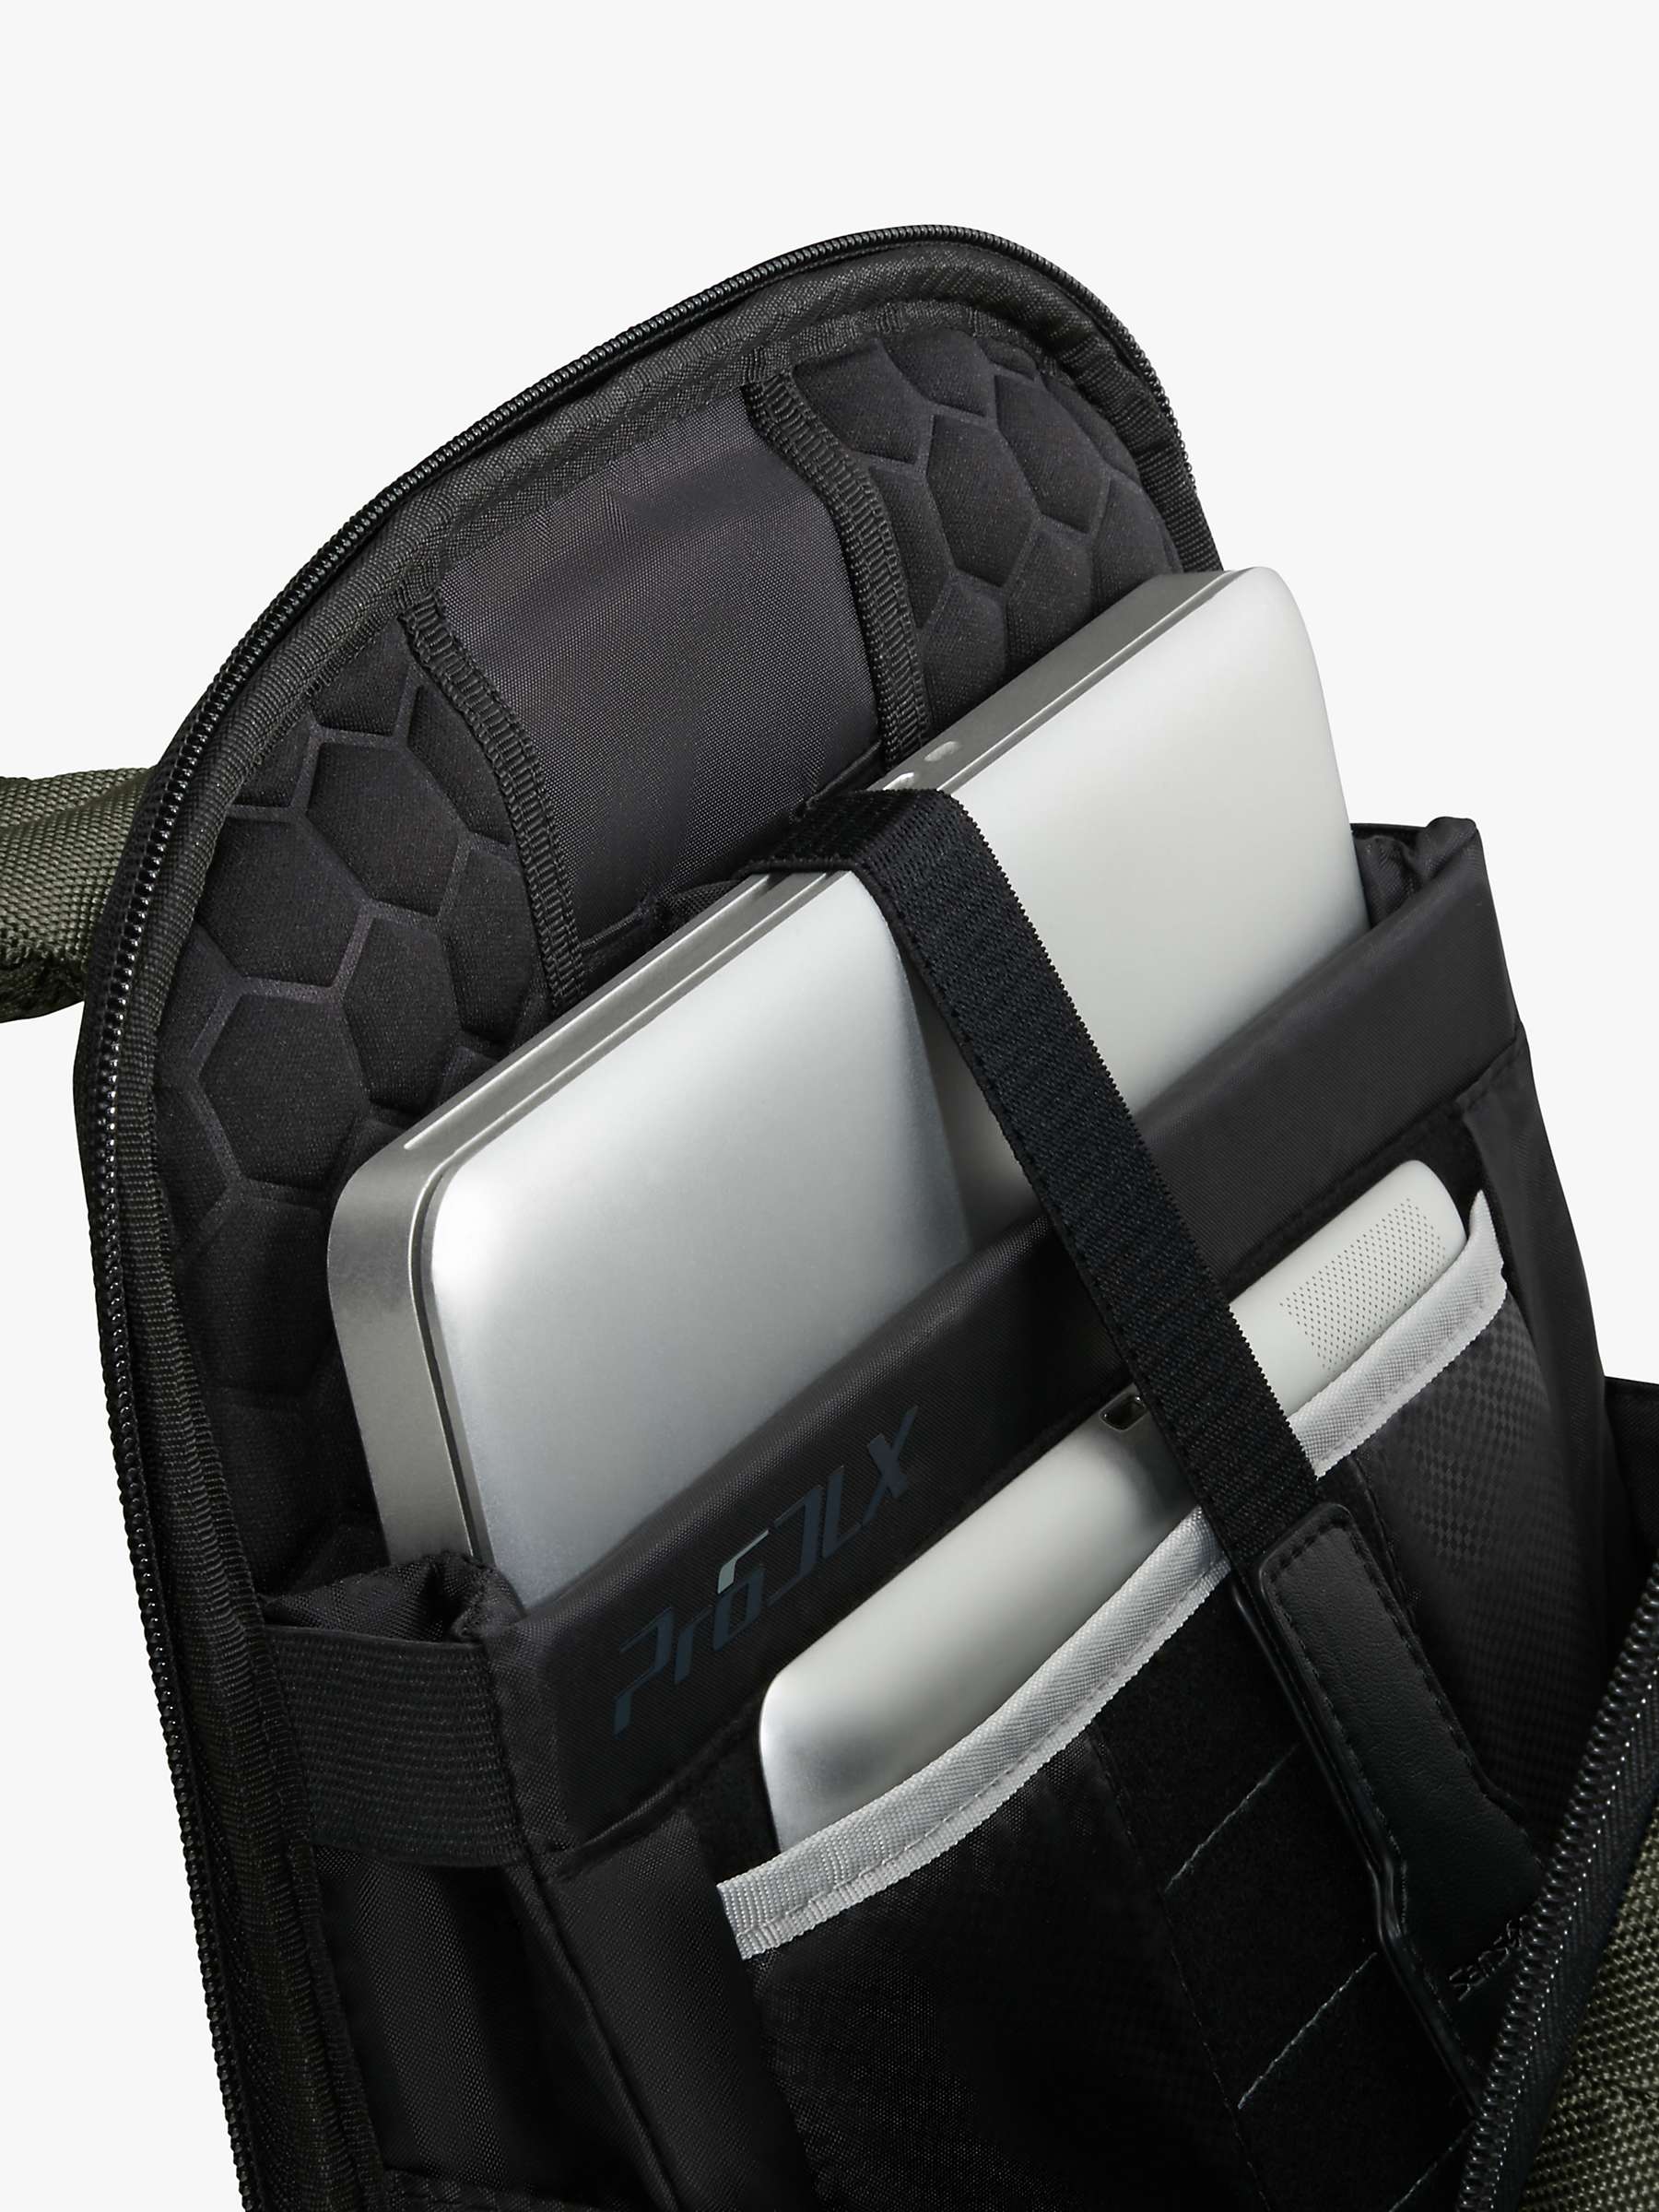 Buy Samsonite Pro-DLX 6 14.1" Laptop Backpack Online at johnlewis.com